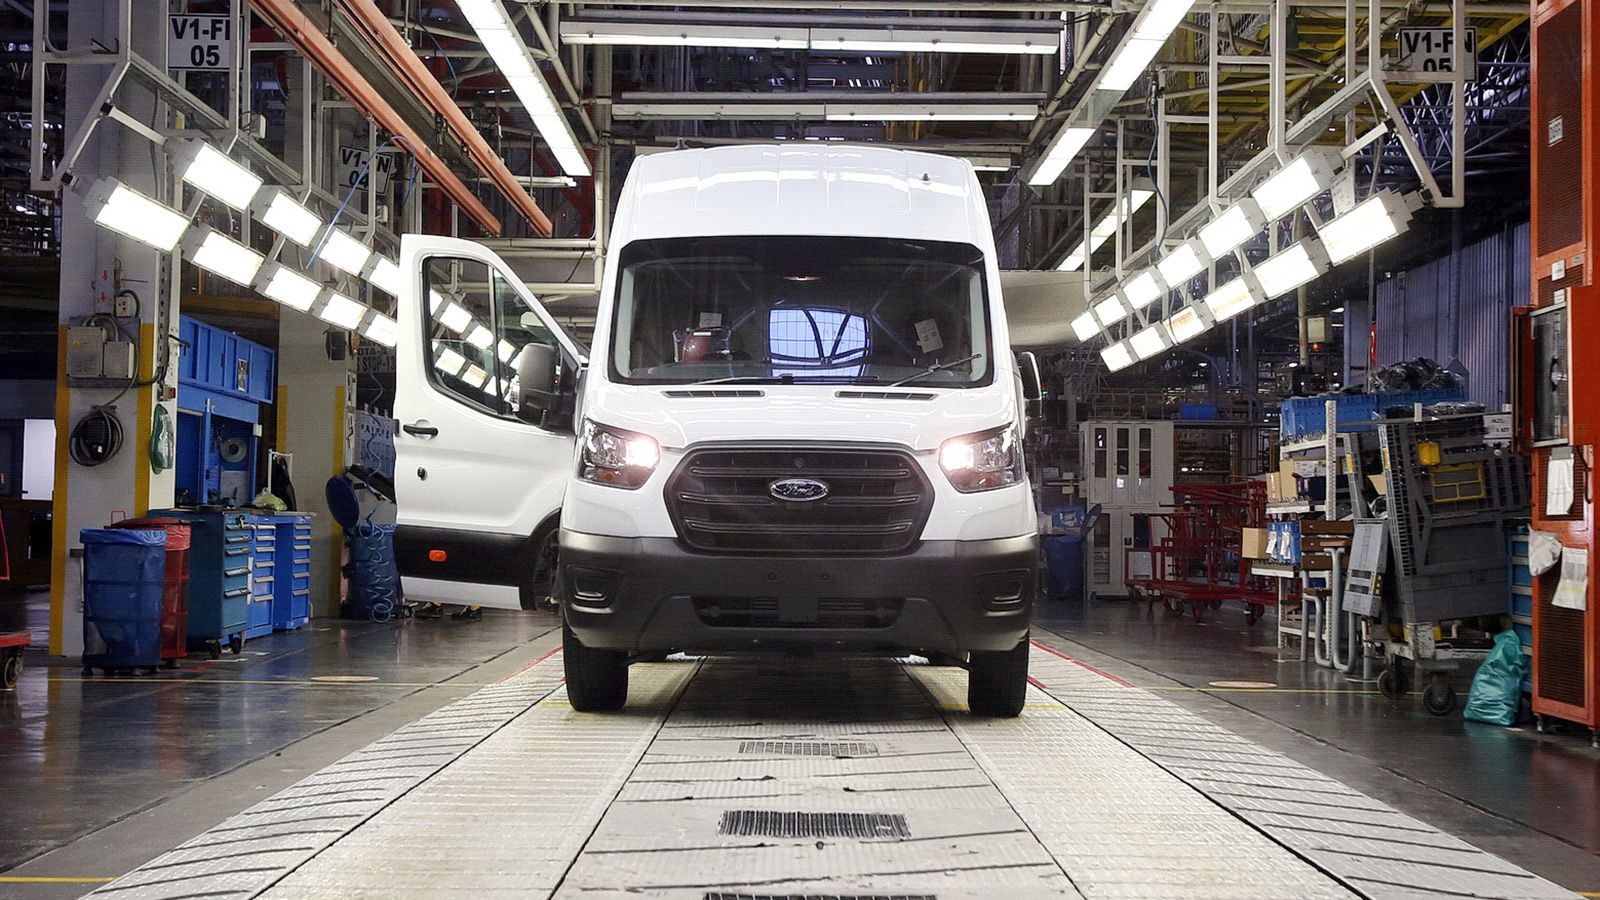 Ξεκίνησε στην Τουρκία η παραγωγή του Ford E-Transit, με το ηλεκτρικό van να έχει λάβει ήδη πάνω από 5.000 παραγγελίες στην Ευρώπη.